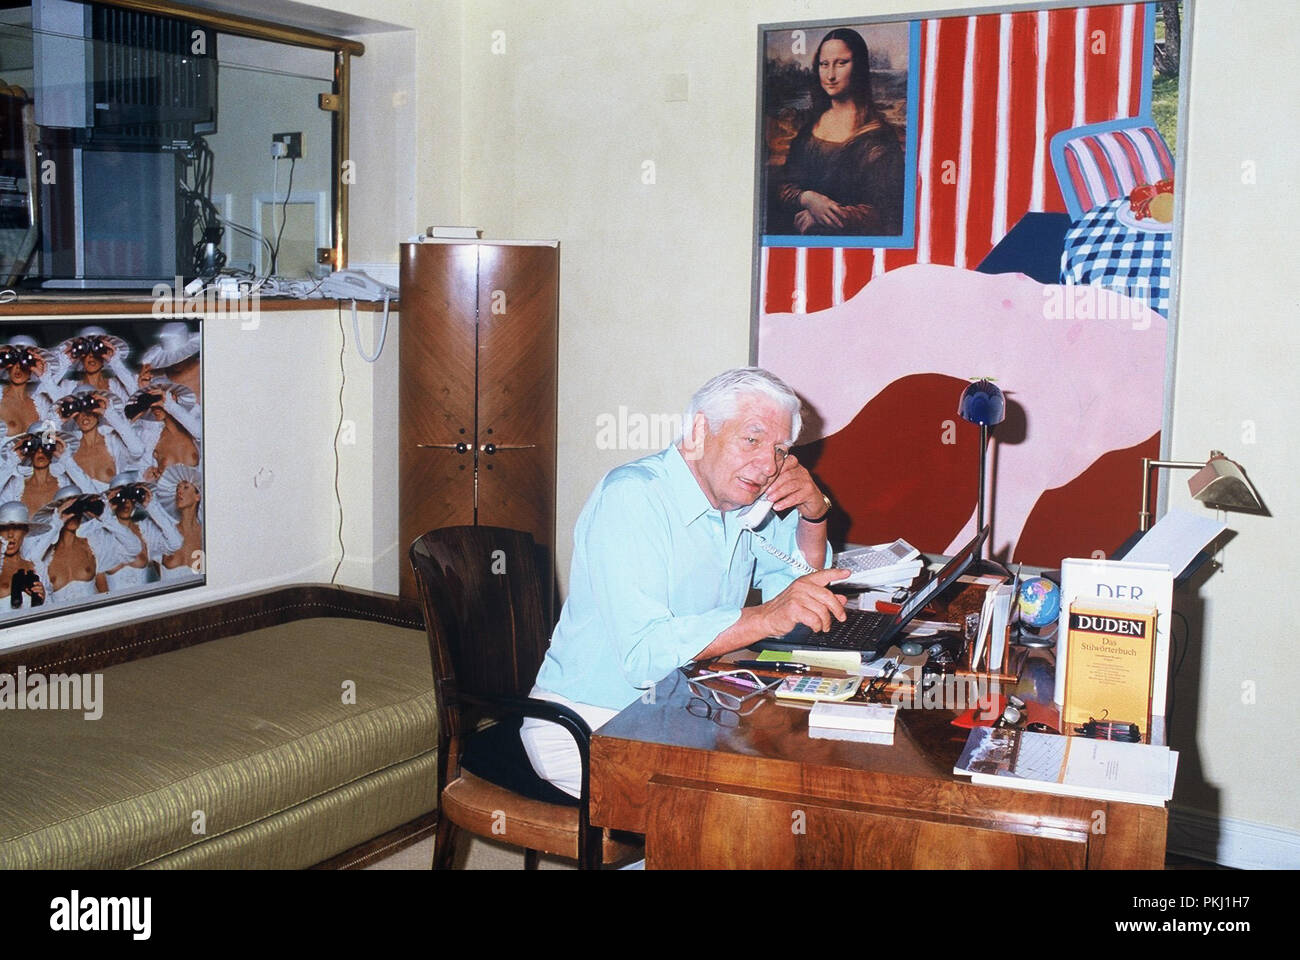 Gunter Sachs am Schreibtisch während eines Telefonats, 2000er. Gunter Sachs at the desk during a phone call, 2000s. Stock Photo